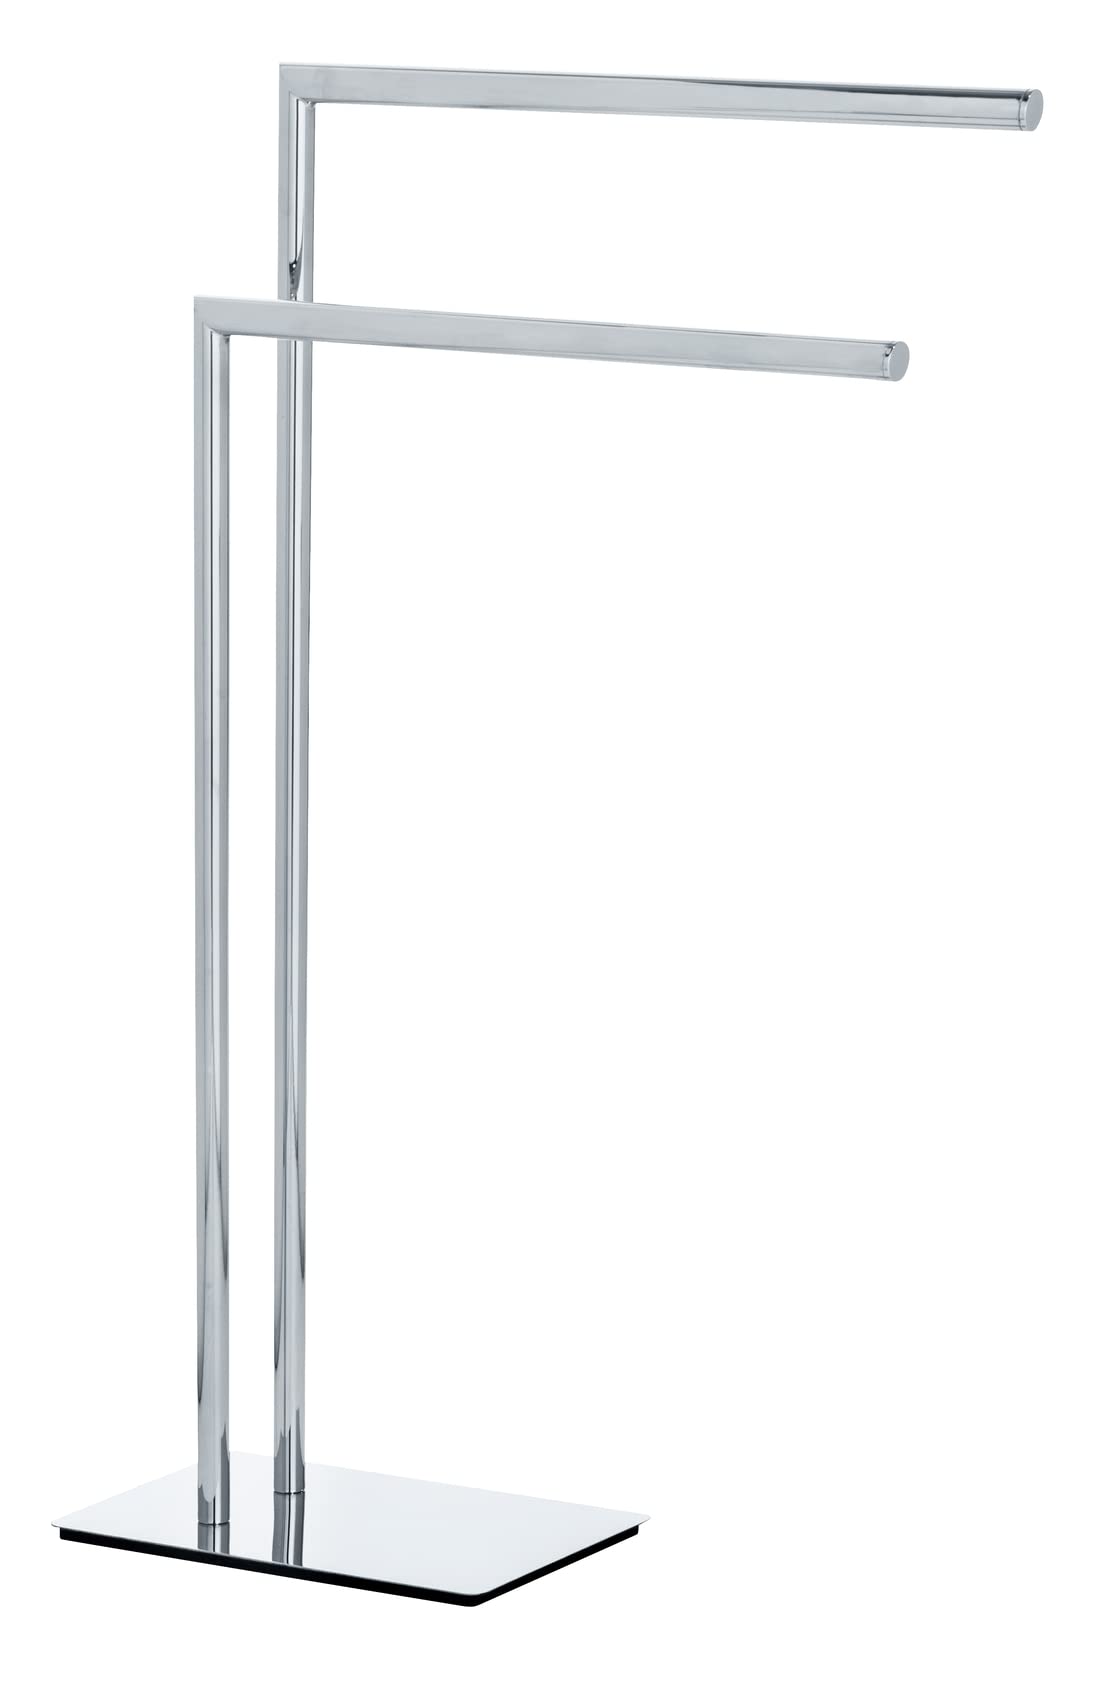 WENKO Handtuchhalter Recco, freistehender Handtuch-Ständer mit 2 parallelen Armen, standfeste Bodenplatte, verchromtes Metall, 48 x 80,5 x 20 cm, Chrom